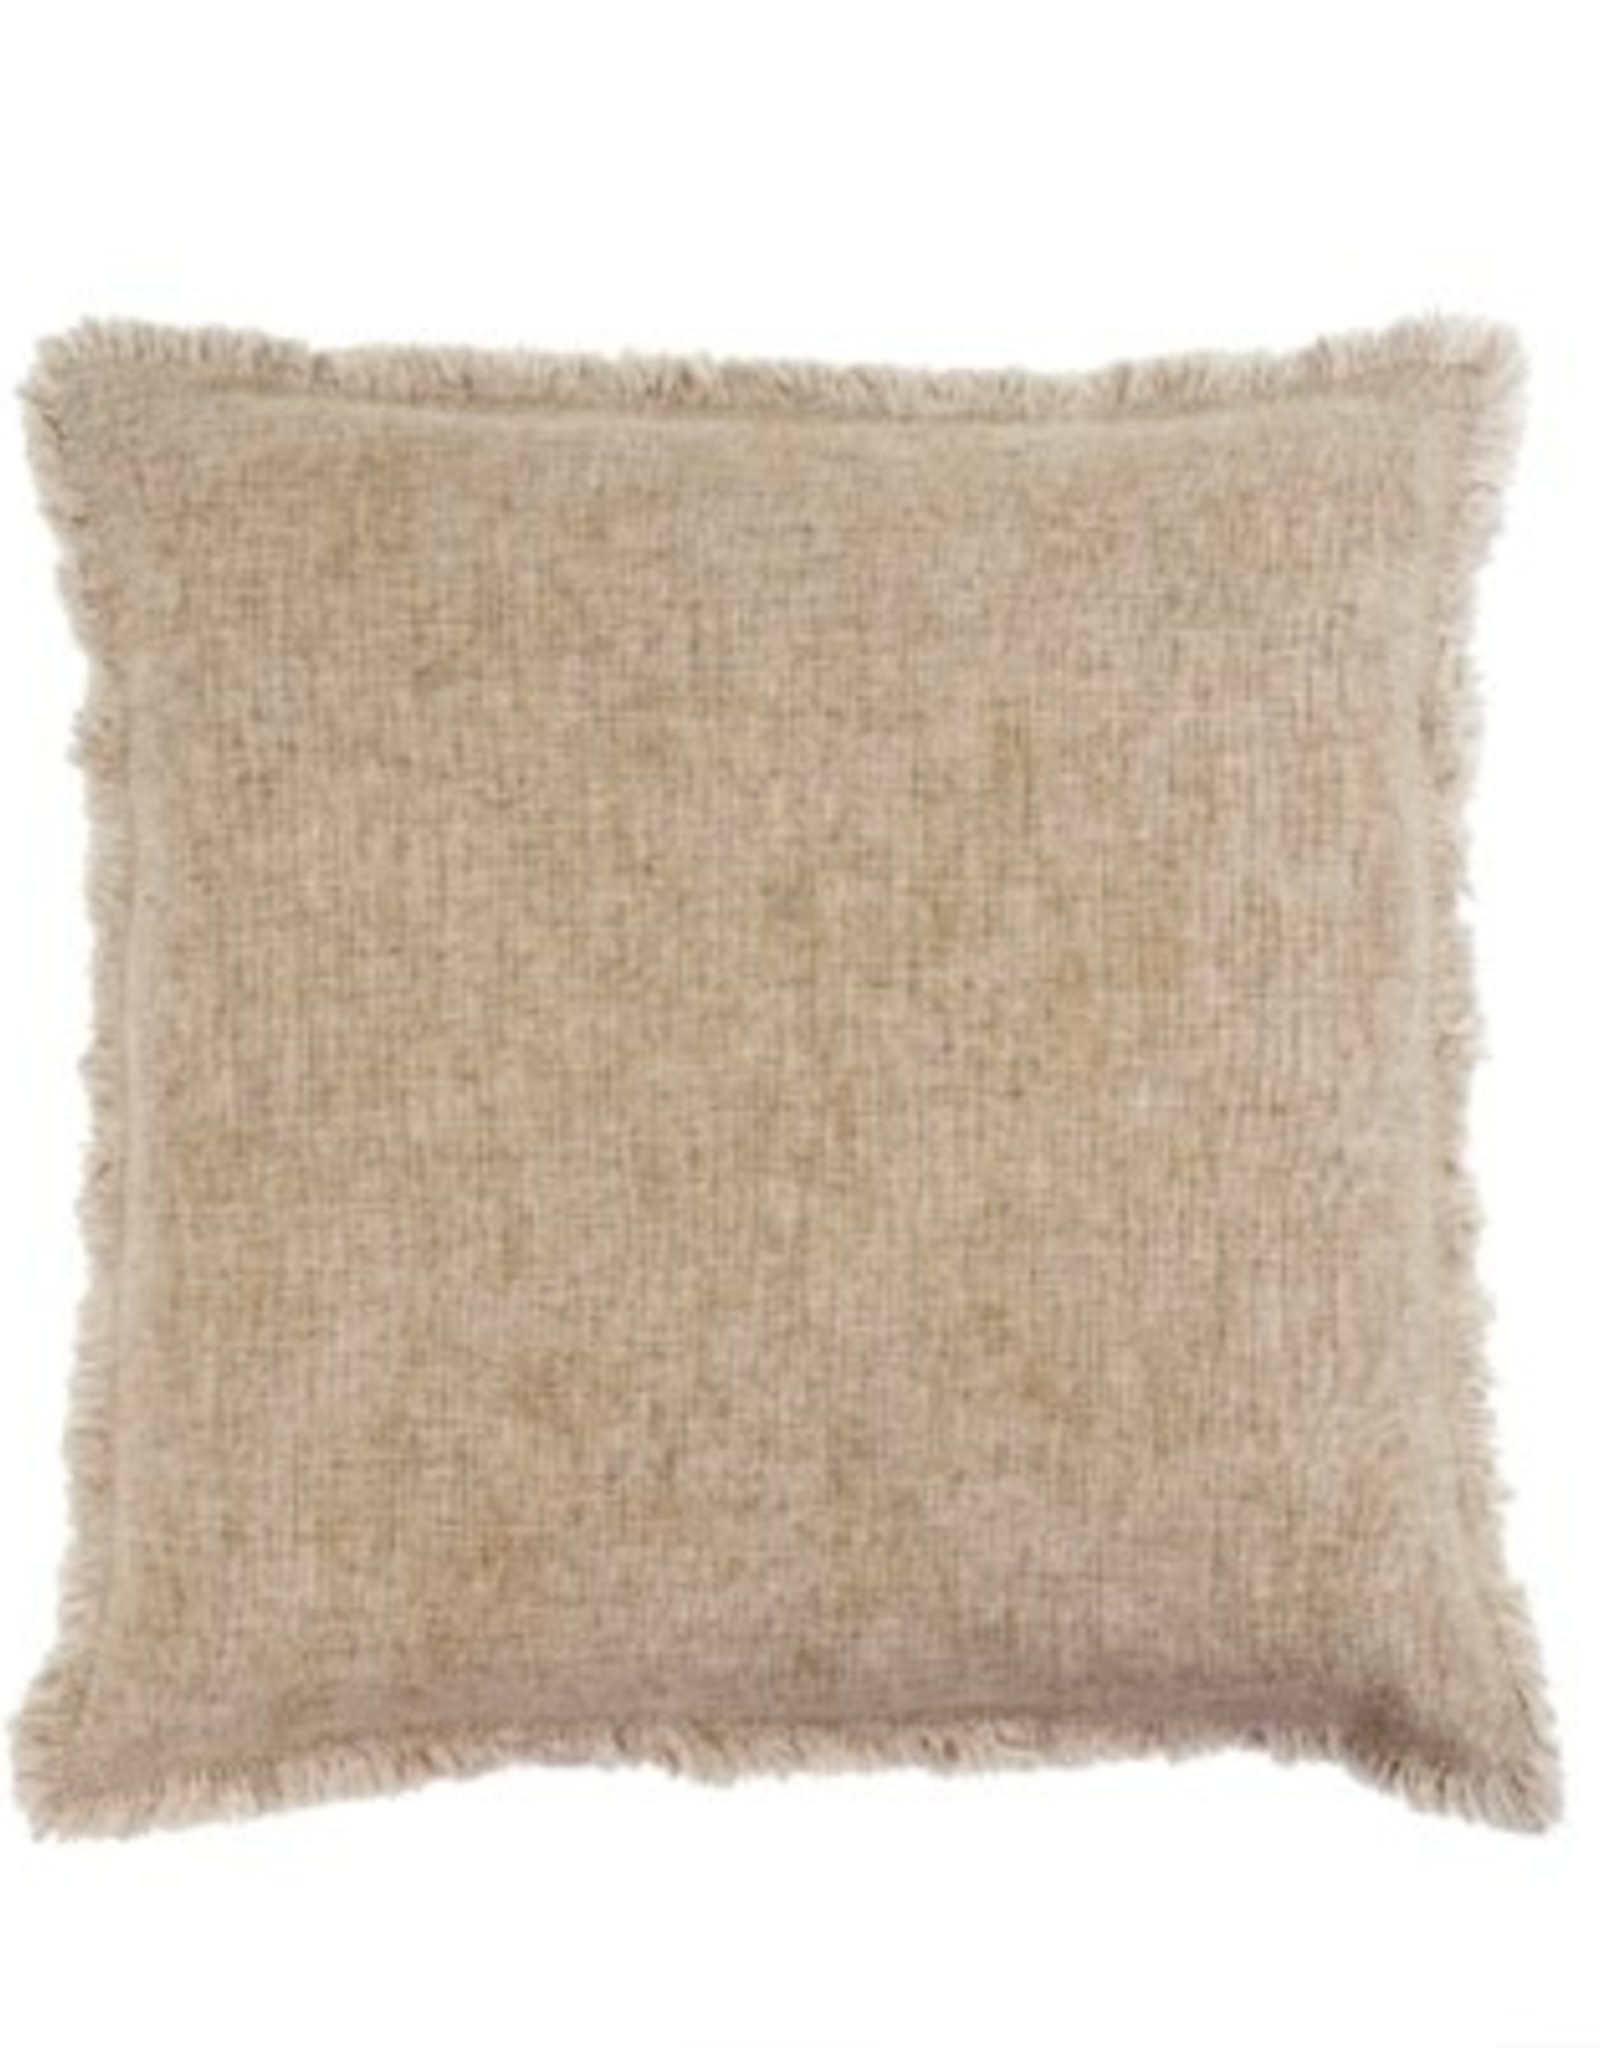 Indaba Cushions Indaba Selena Linen Natural 20 x 20 1-4931